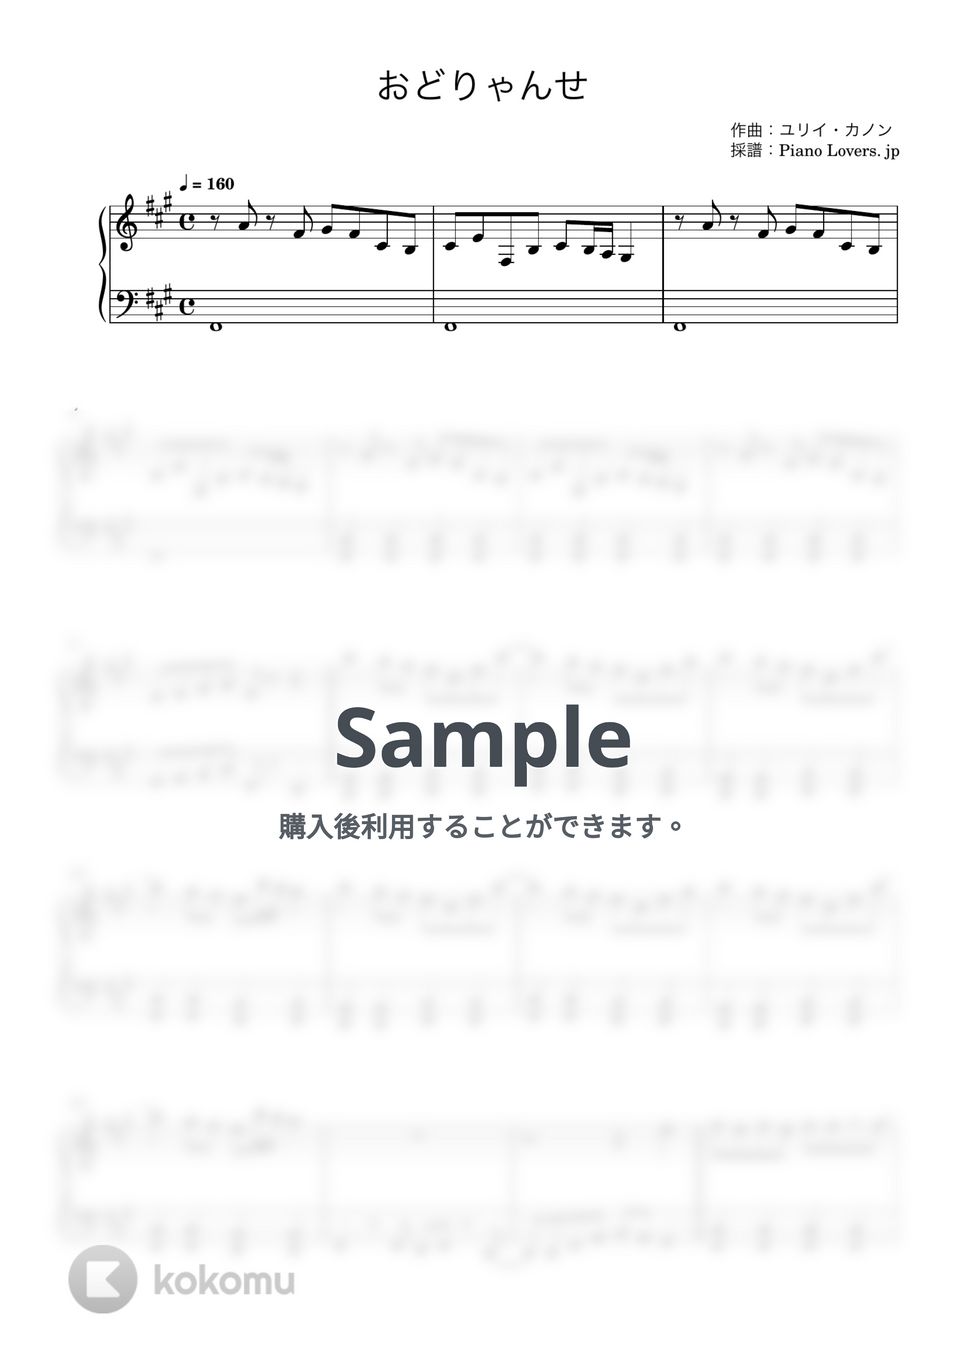 ユリイ・カノン - おどりゃんせ (ピアノ楽譜 / 初級) by Piano Lovers. jp